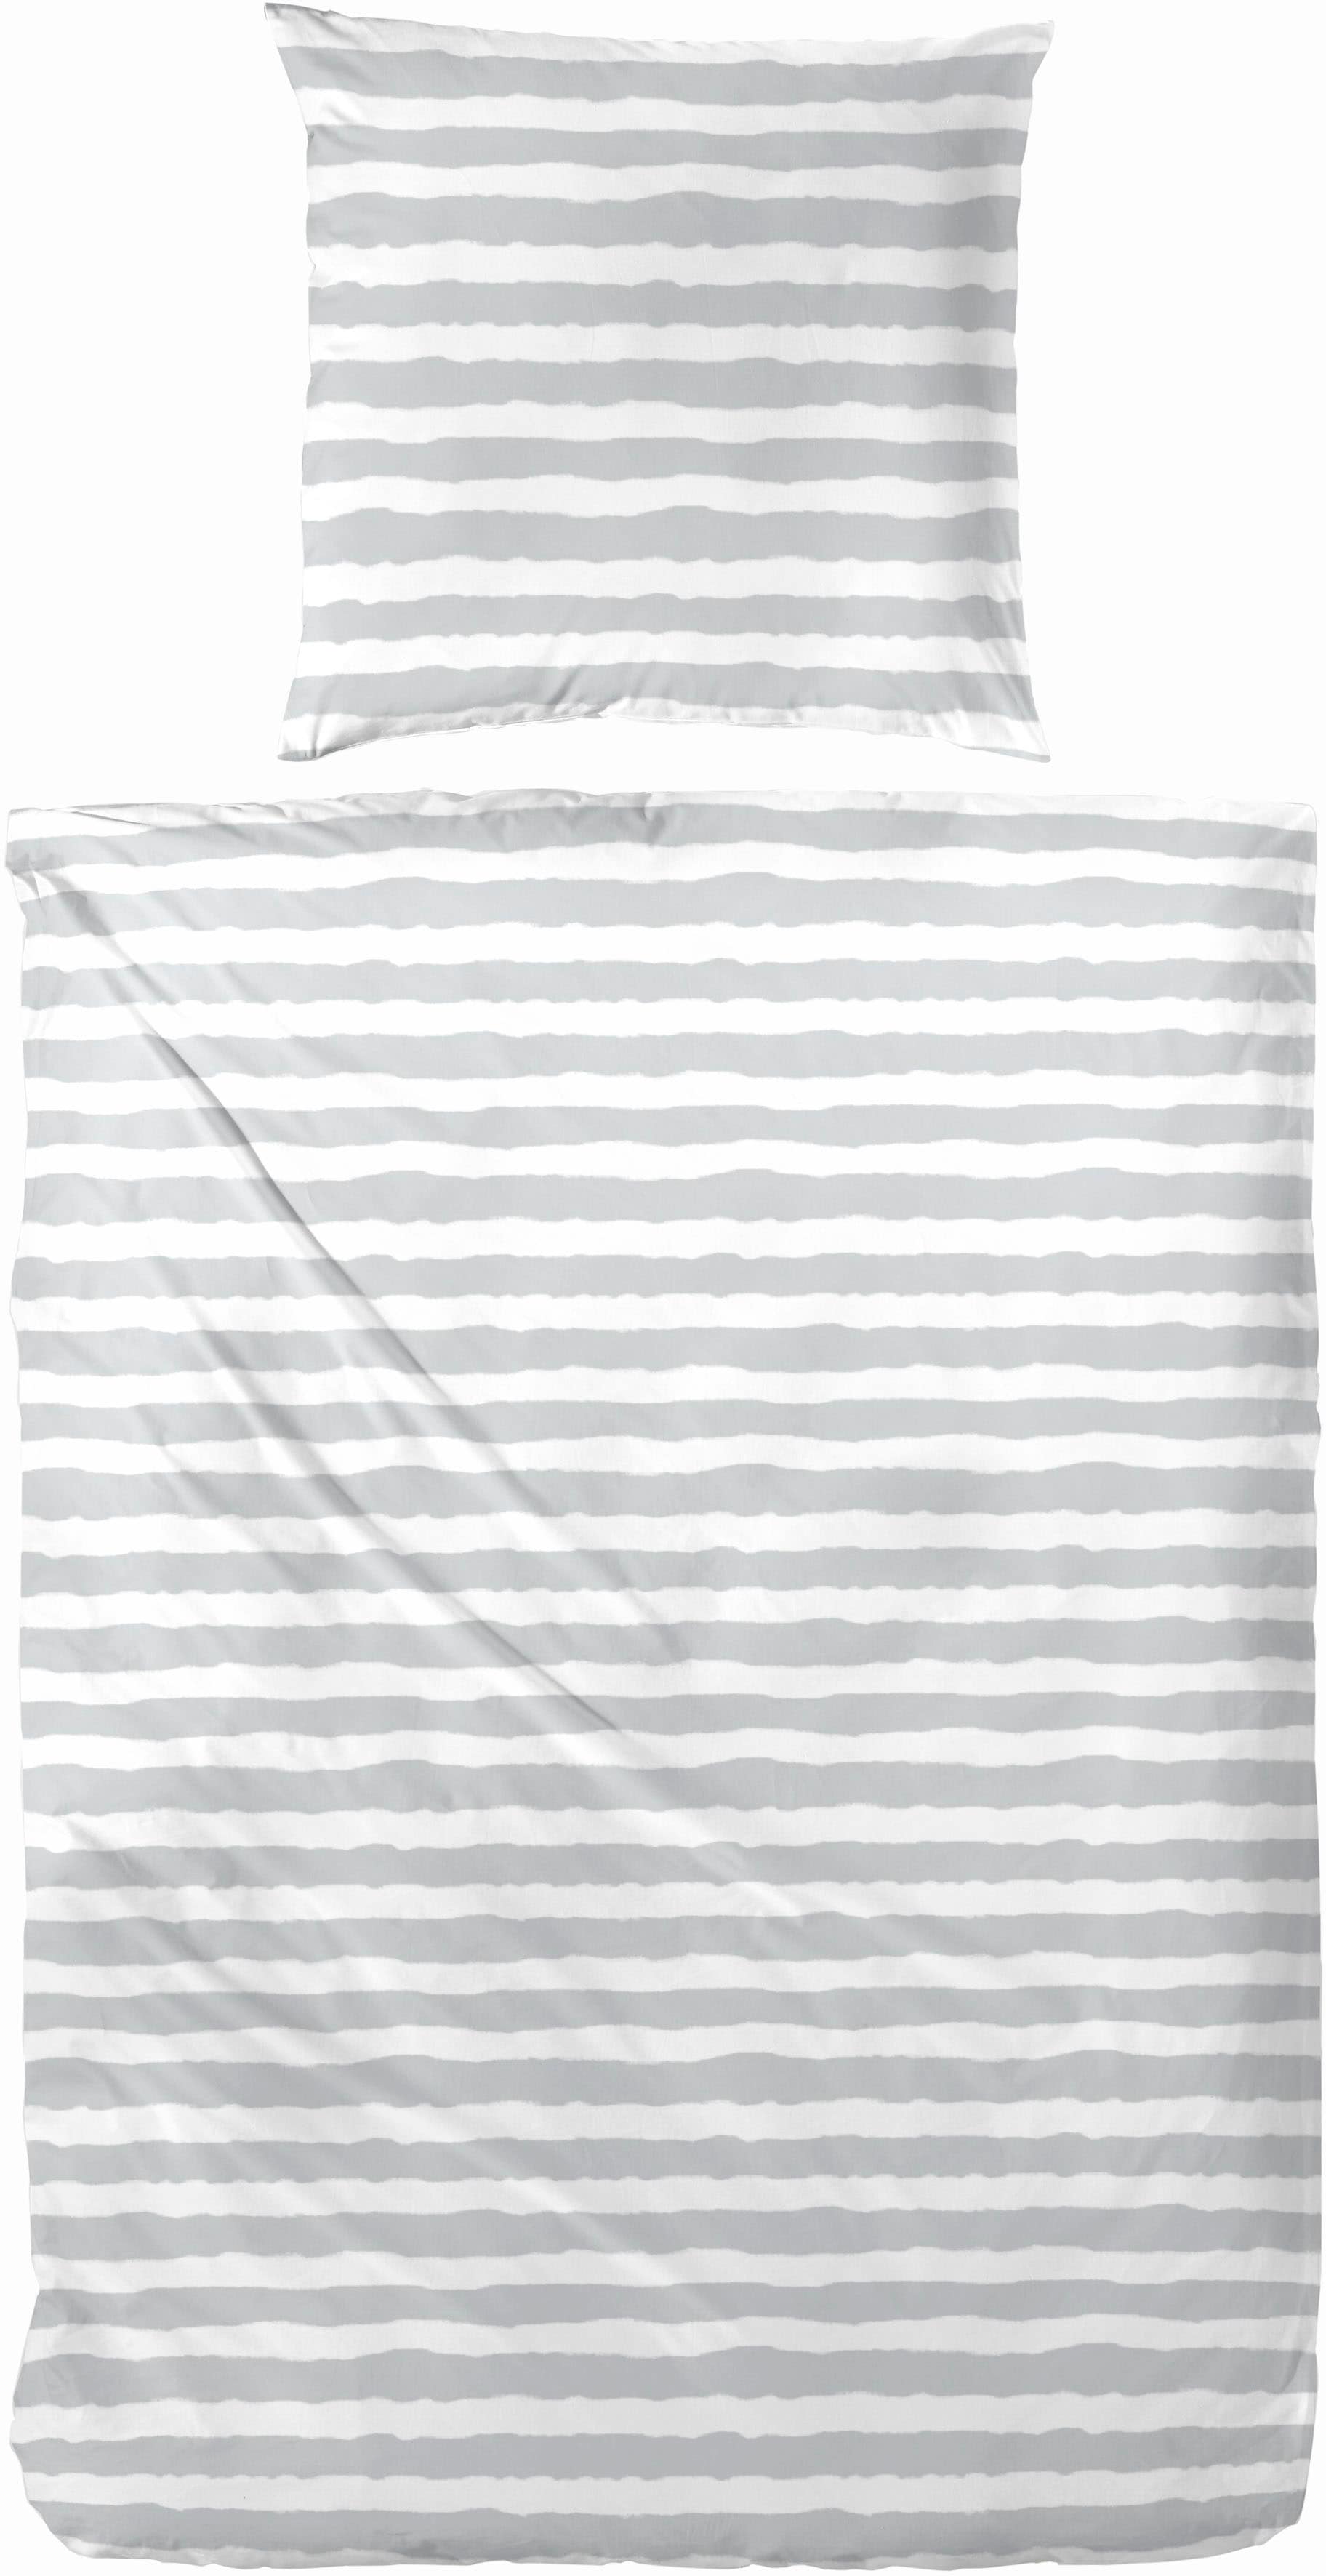 Primera Bettwäsche "Baumwoll-Bettwäsche Uni-Streifen", mit einem modernen Streifenmuster